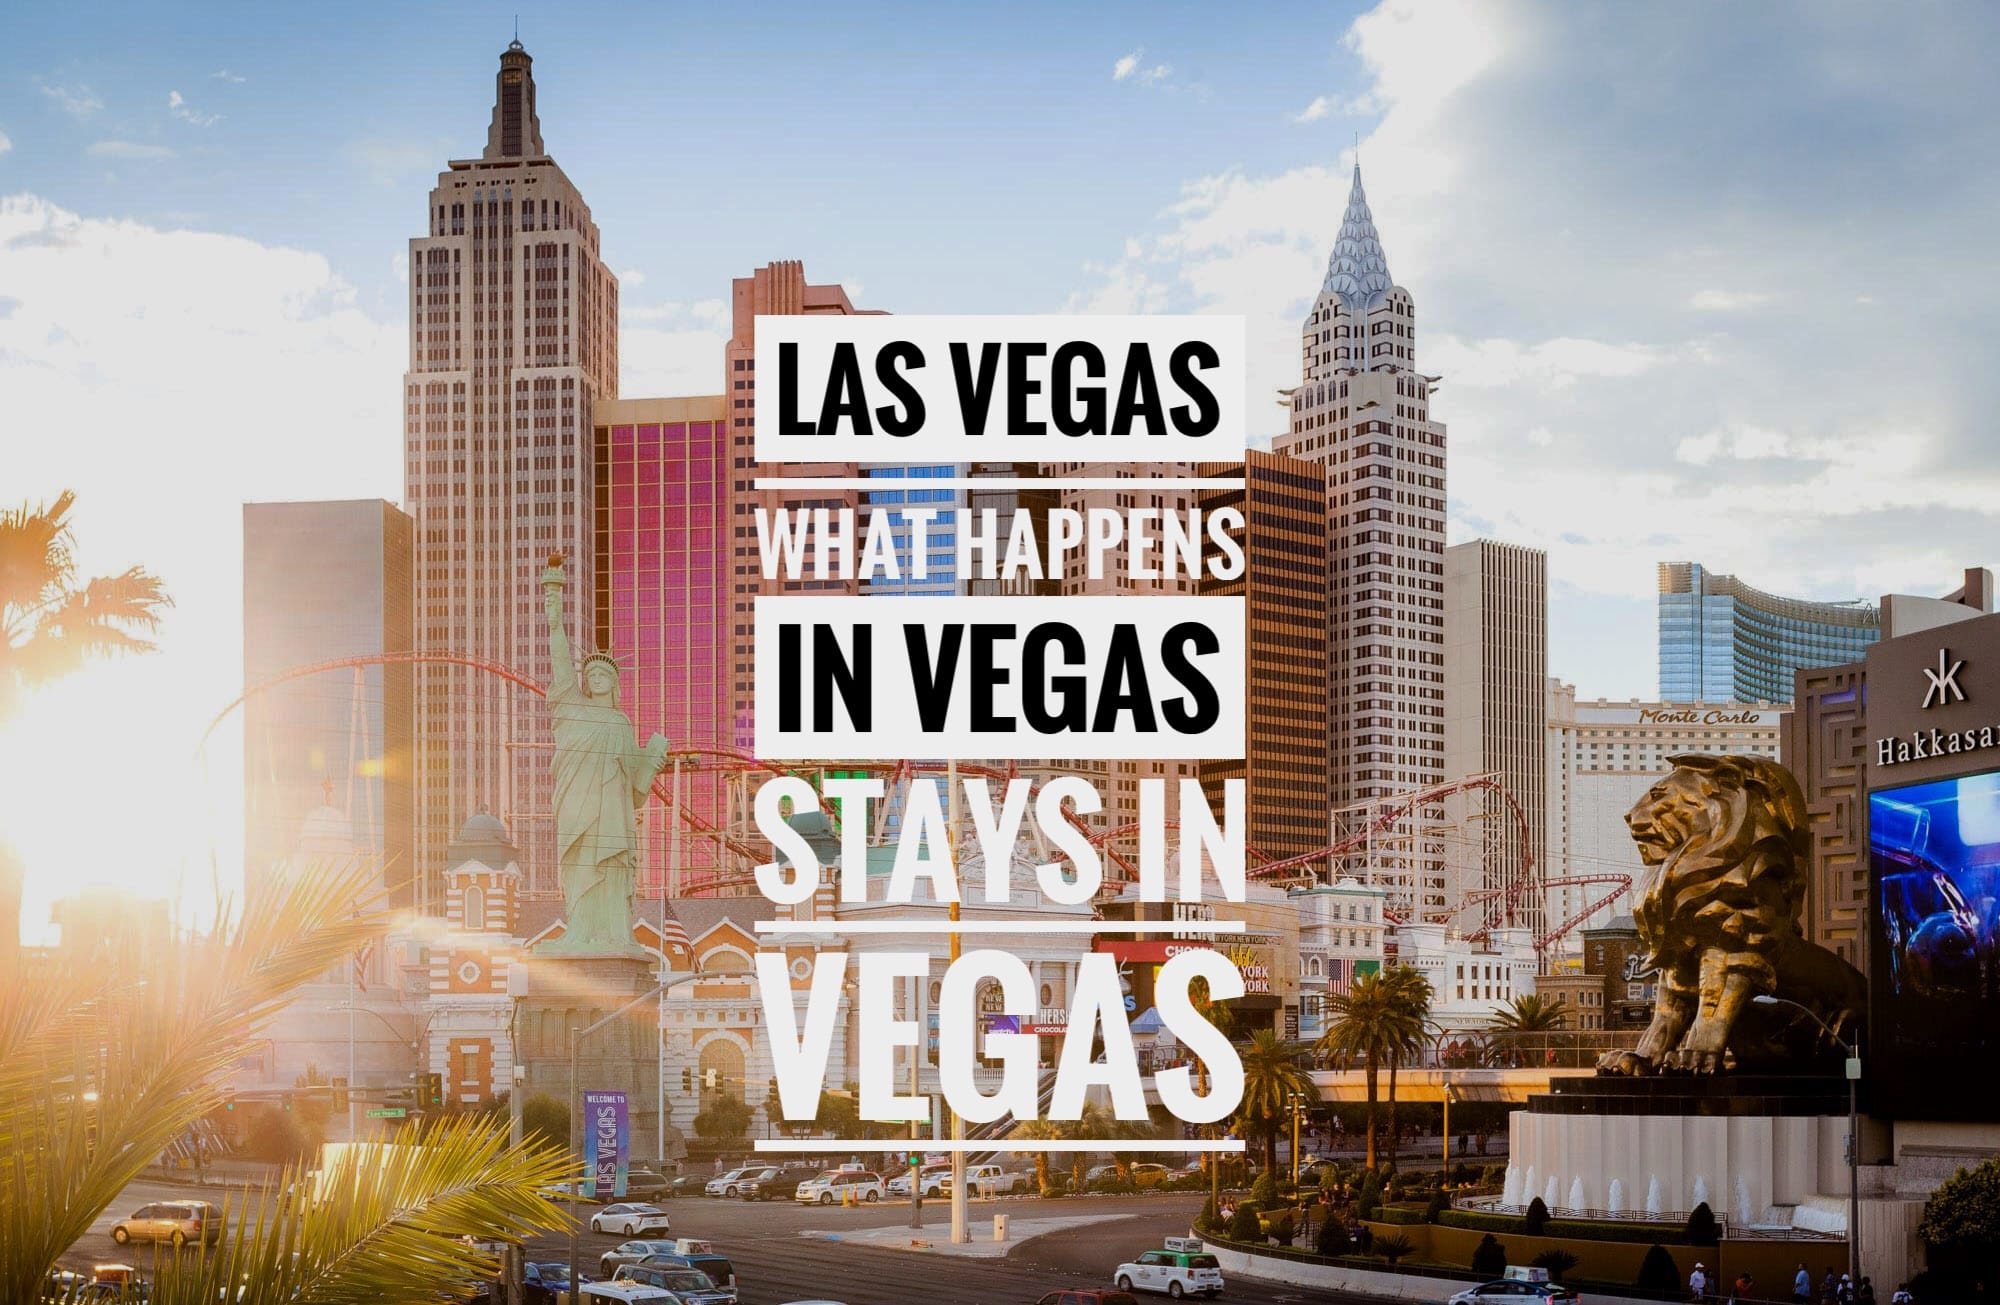 Las Vegas – What happens in Vegas stays in Vegas